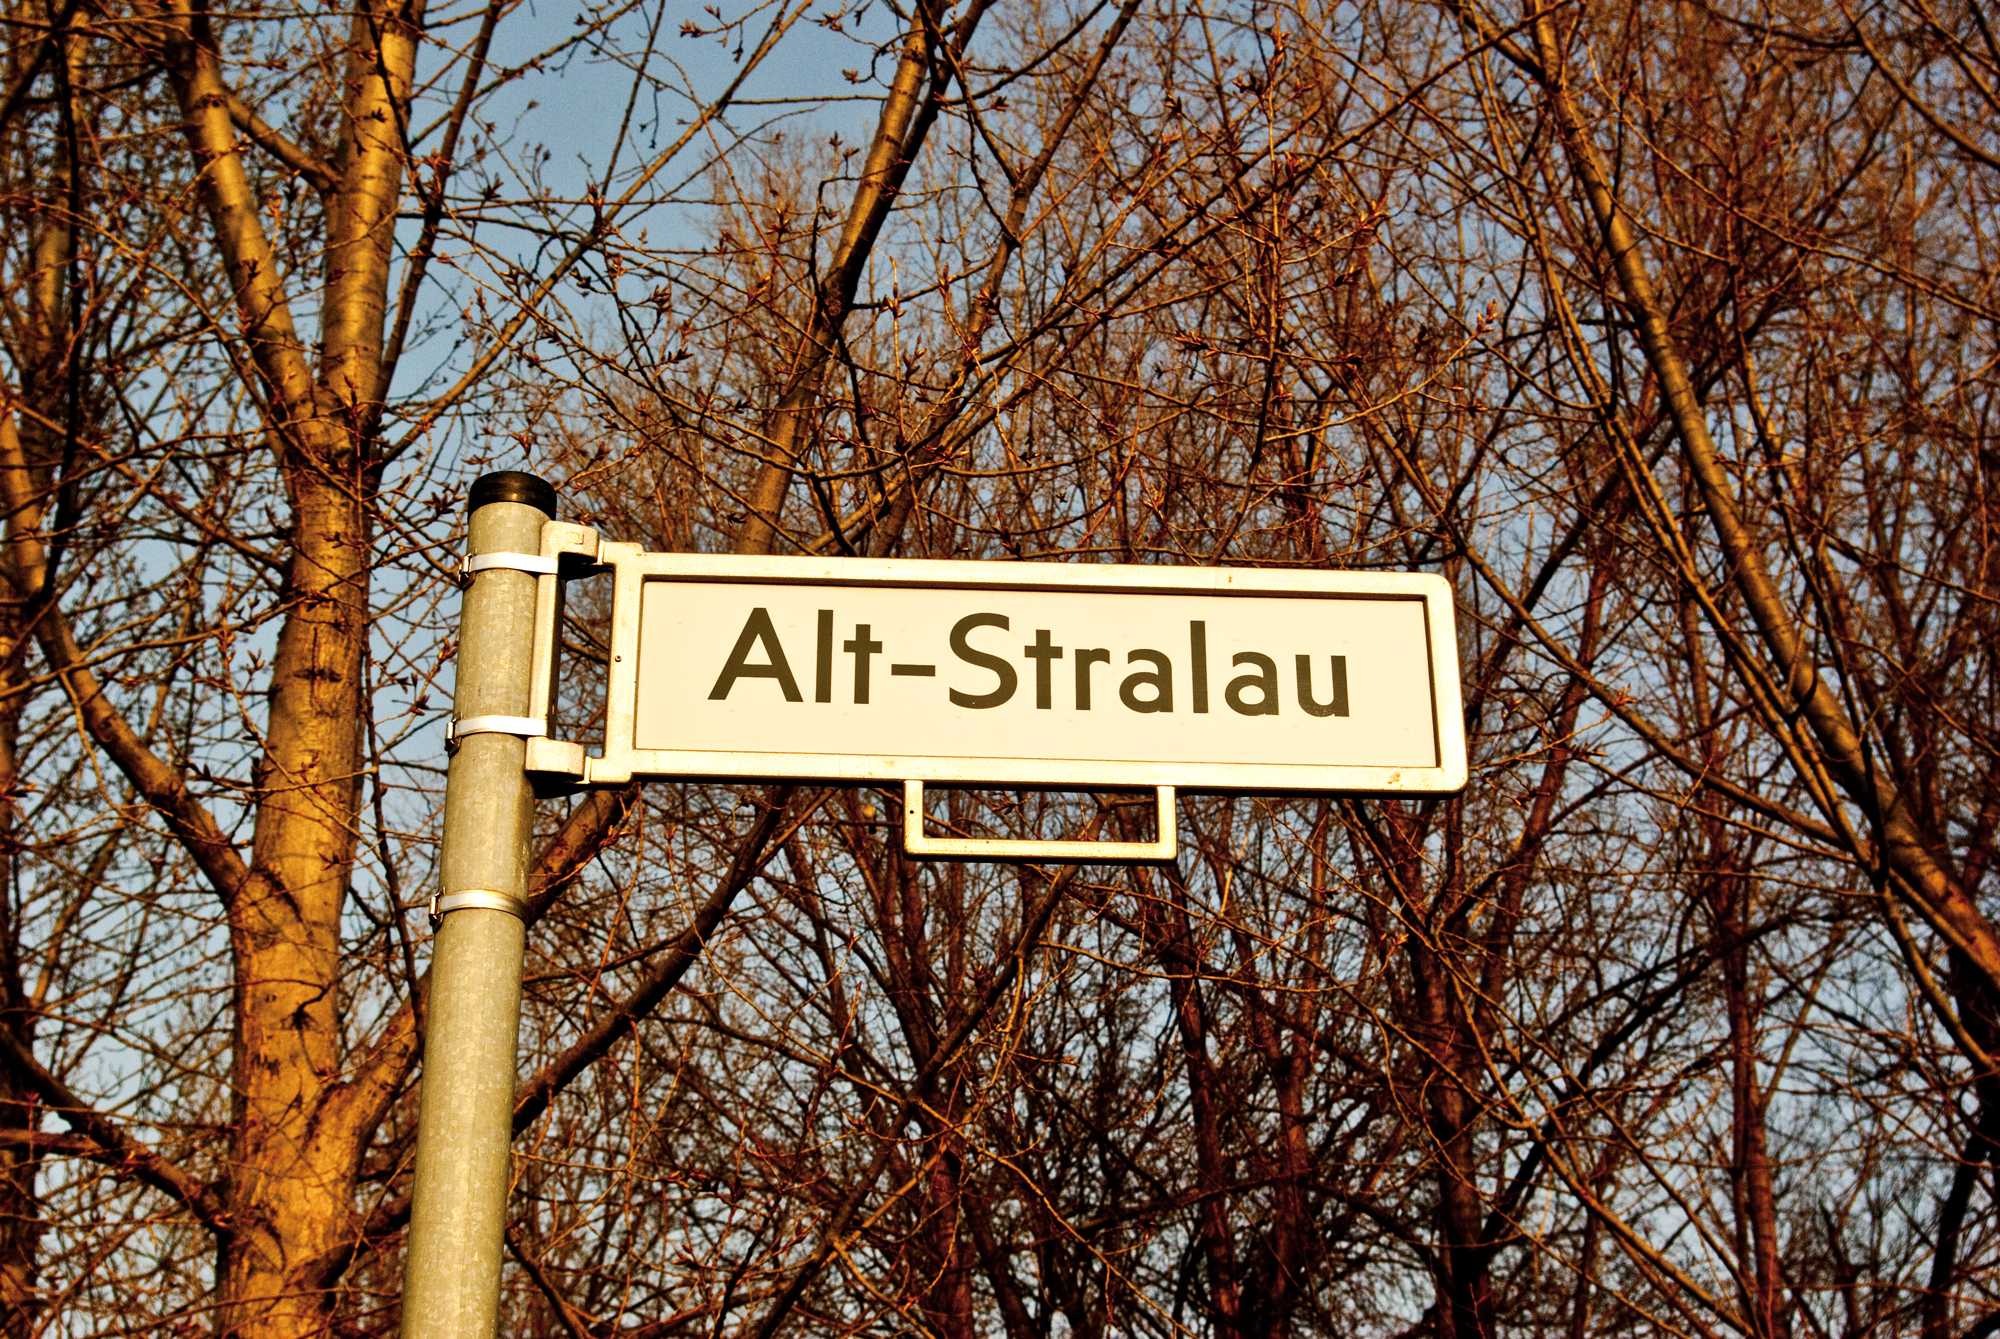 Schild mit Straßenname "Alt-Stralau". Im Hintergrund stehen kahle Bäume.